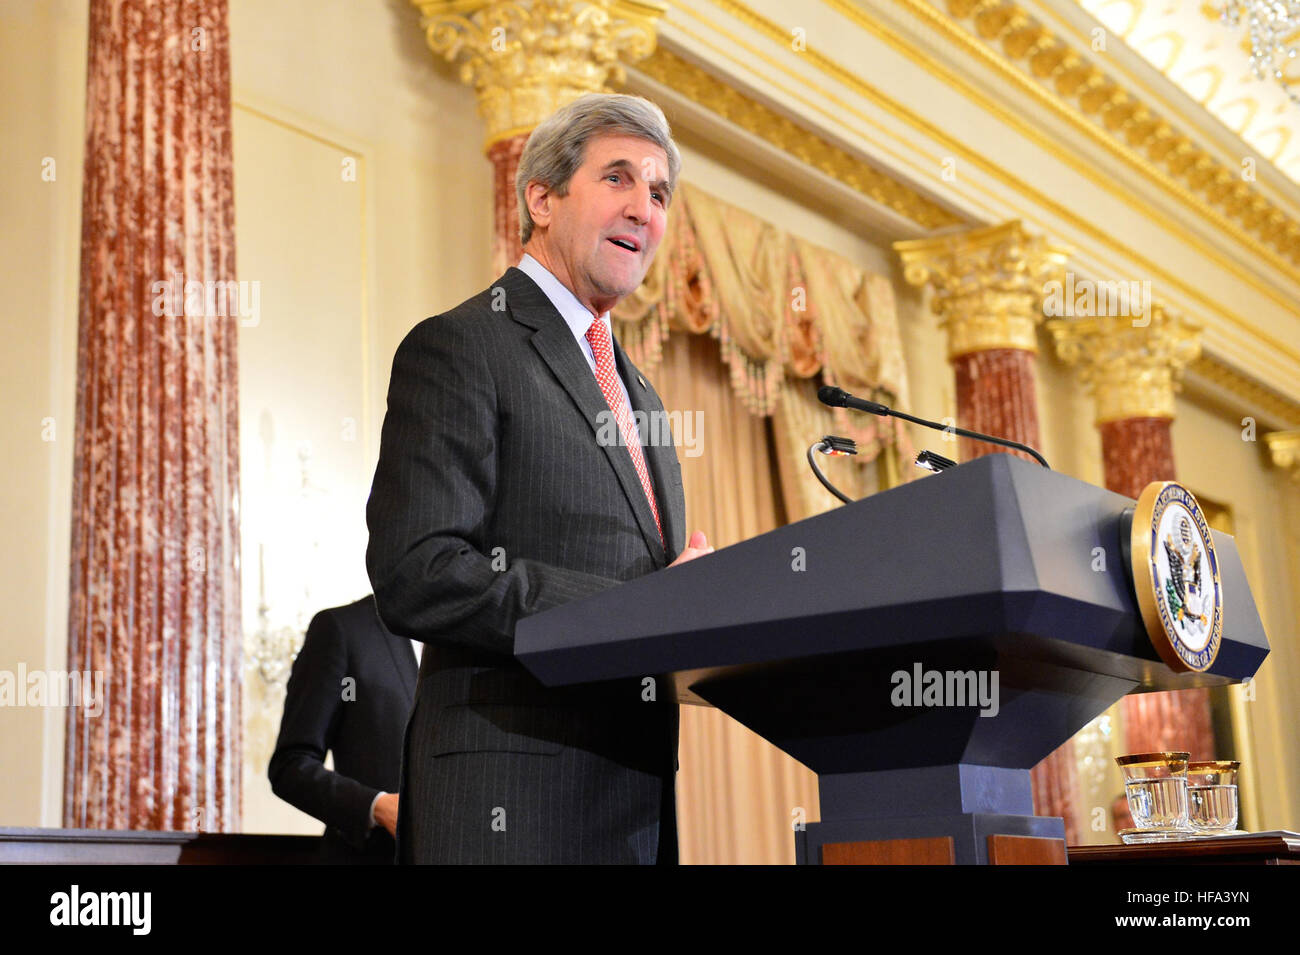 Le secrétaire d'Etat John Kerry prononce une allocution à la cérémonie d'assermentation pour U.S. Ambassadeur désigné pour les Philippines, Sung Kim au département d'État des États-Unis à Washington, D.C., le 3 novembre 2016. Banque D'Images